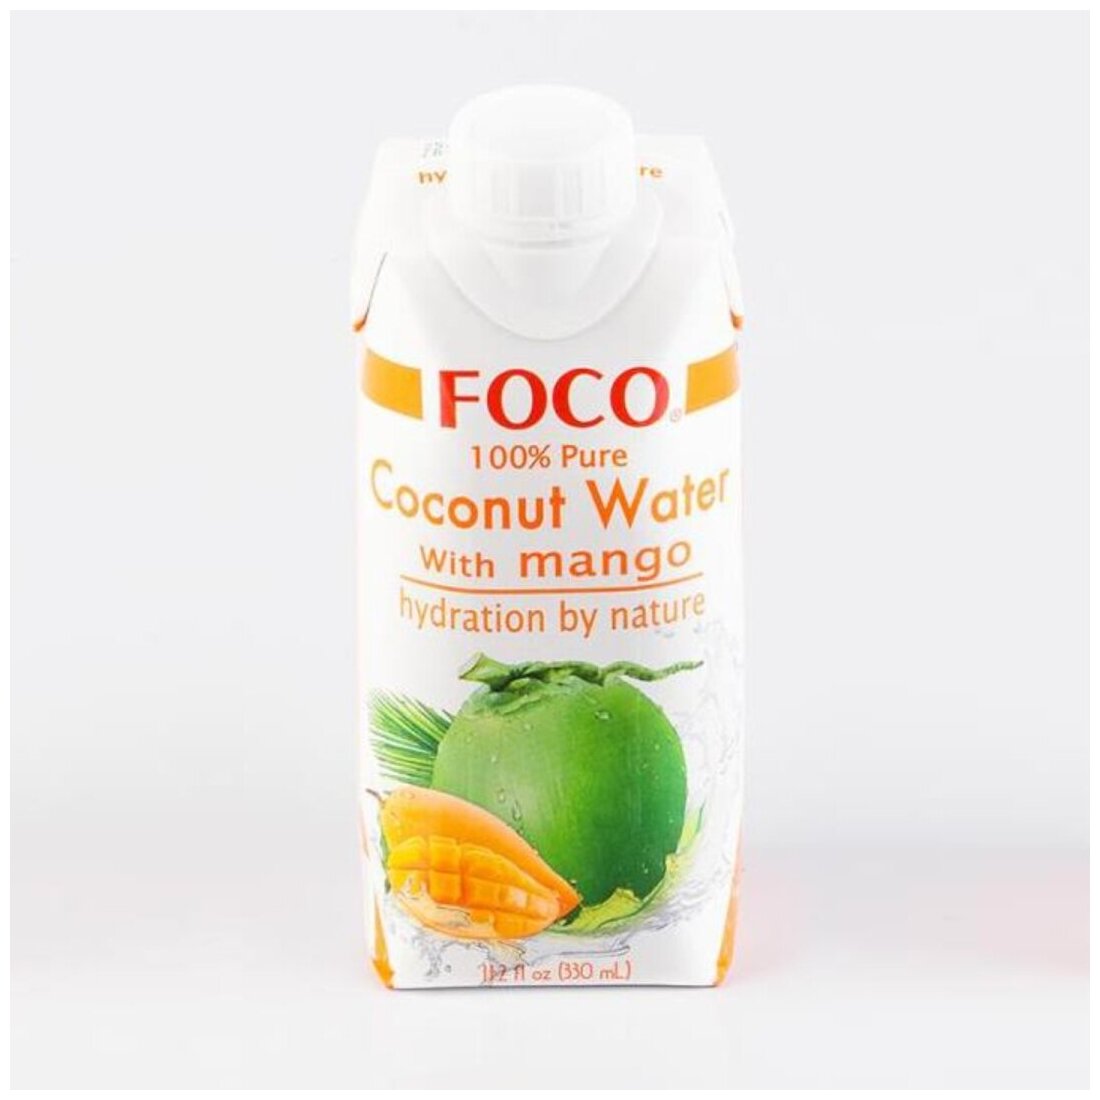 Кокосовая вода с манго "FOCO" 330 мл Tetra Pak 1шт - фотография № 19